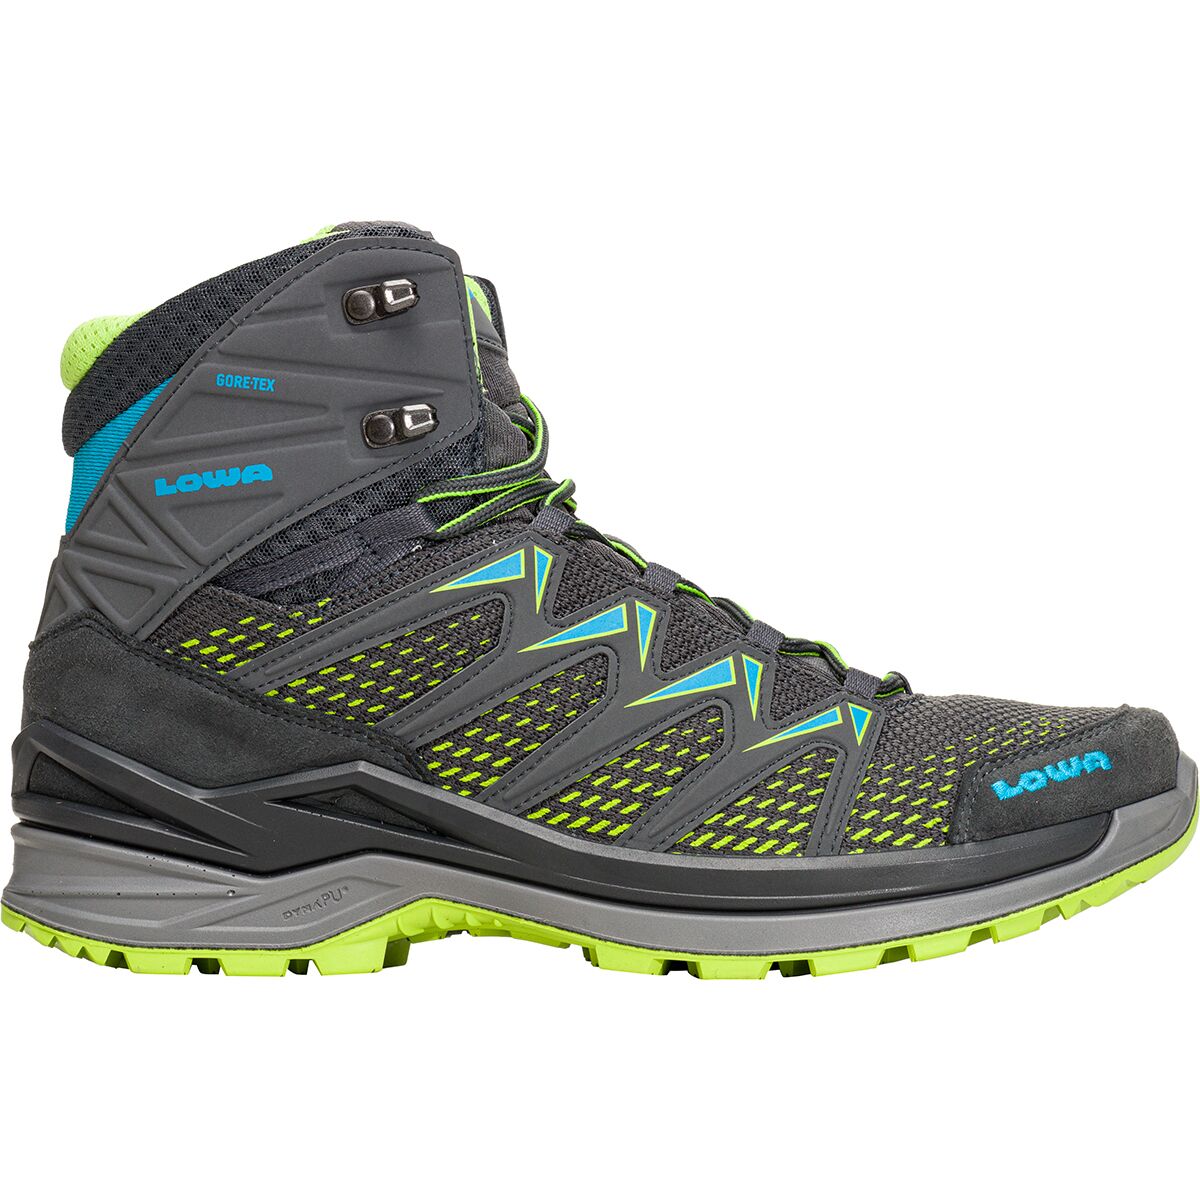 Lowa Innox Pro GTX Mid Hiking Boot - Men's